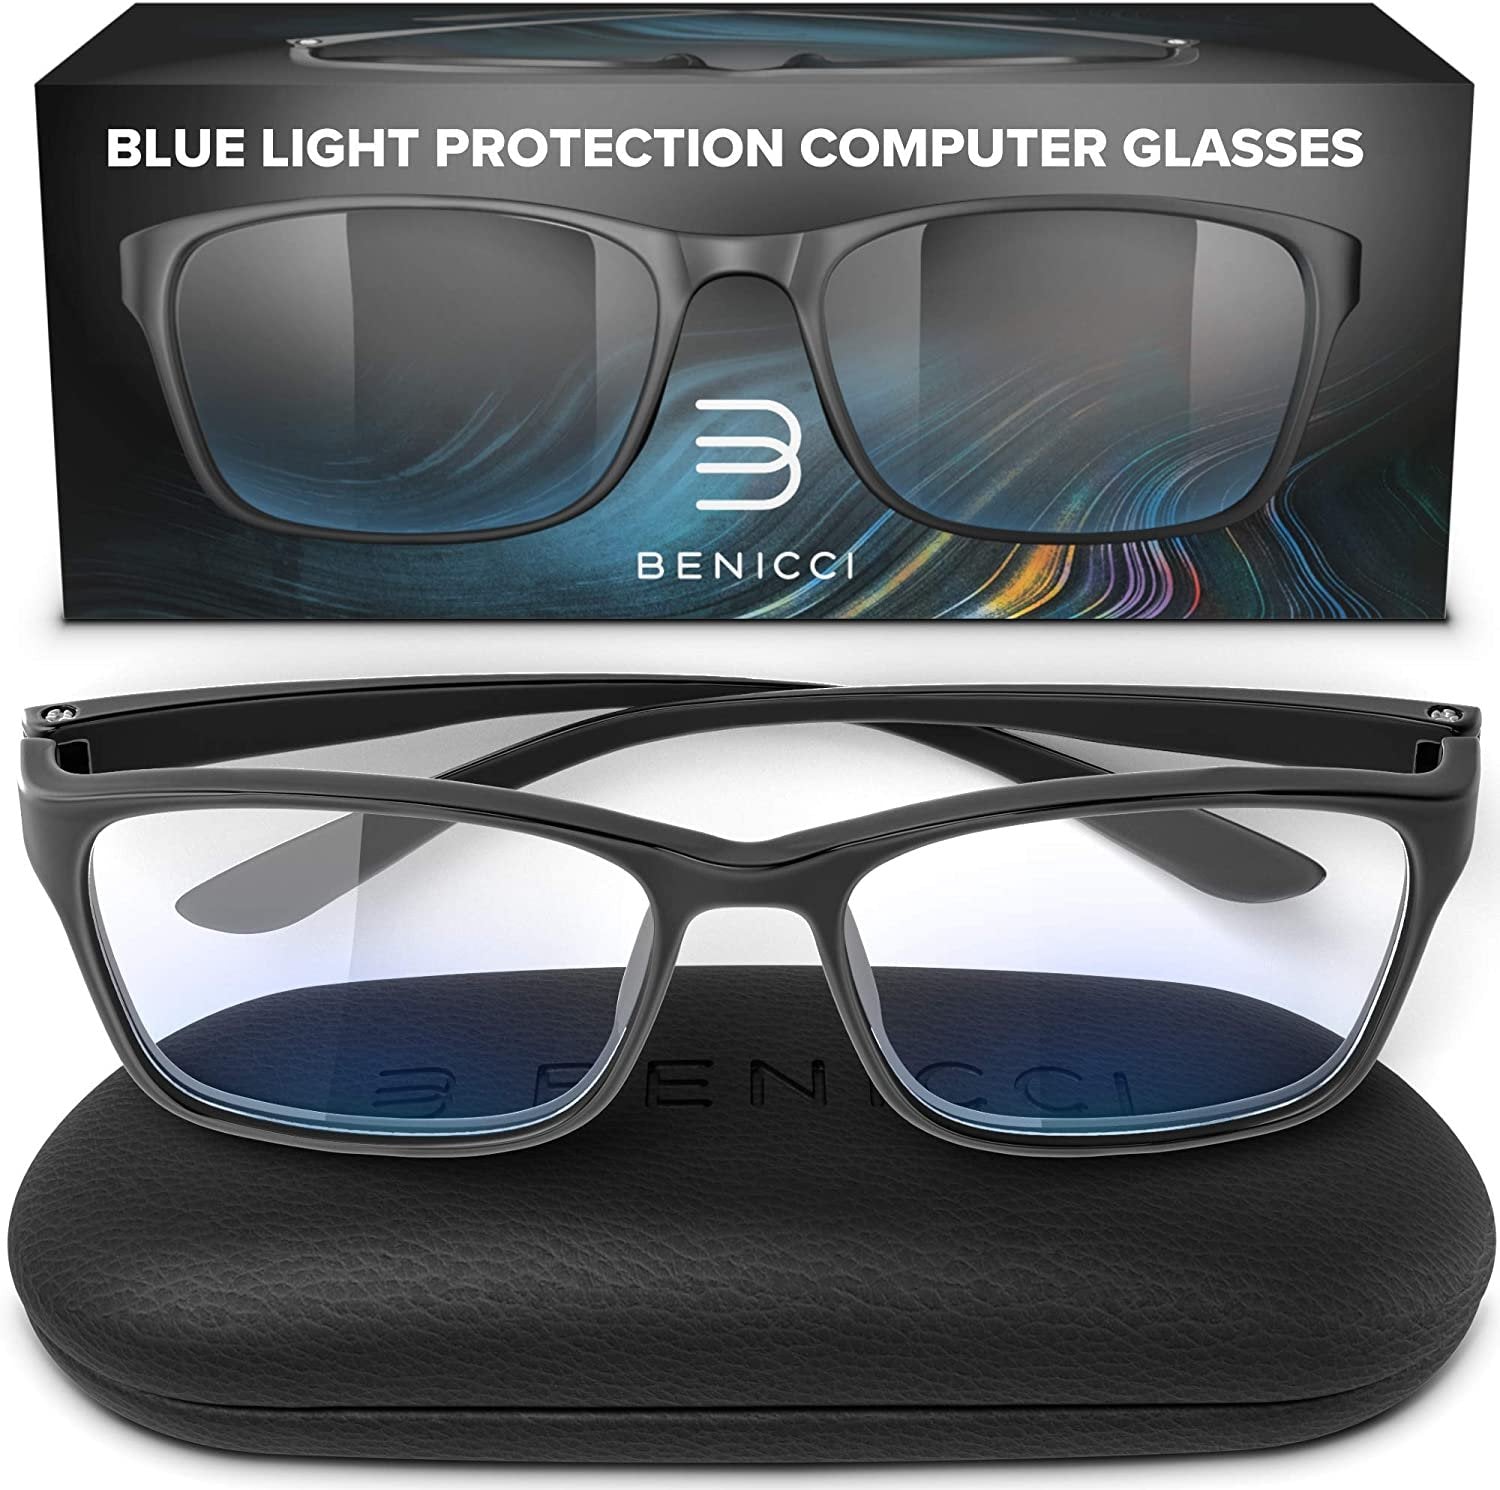 Stylish Blue Light Blocking Glasses for Women or Men - Ease